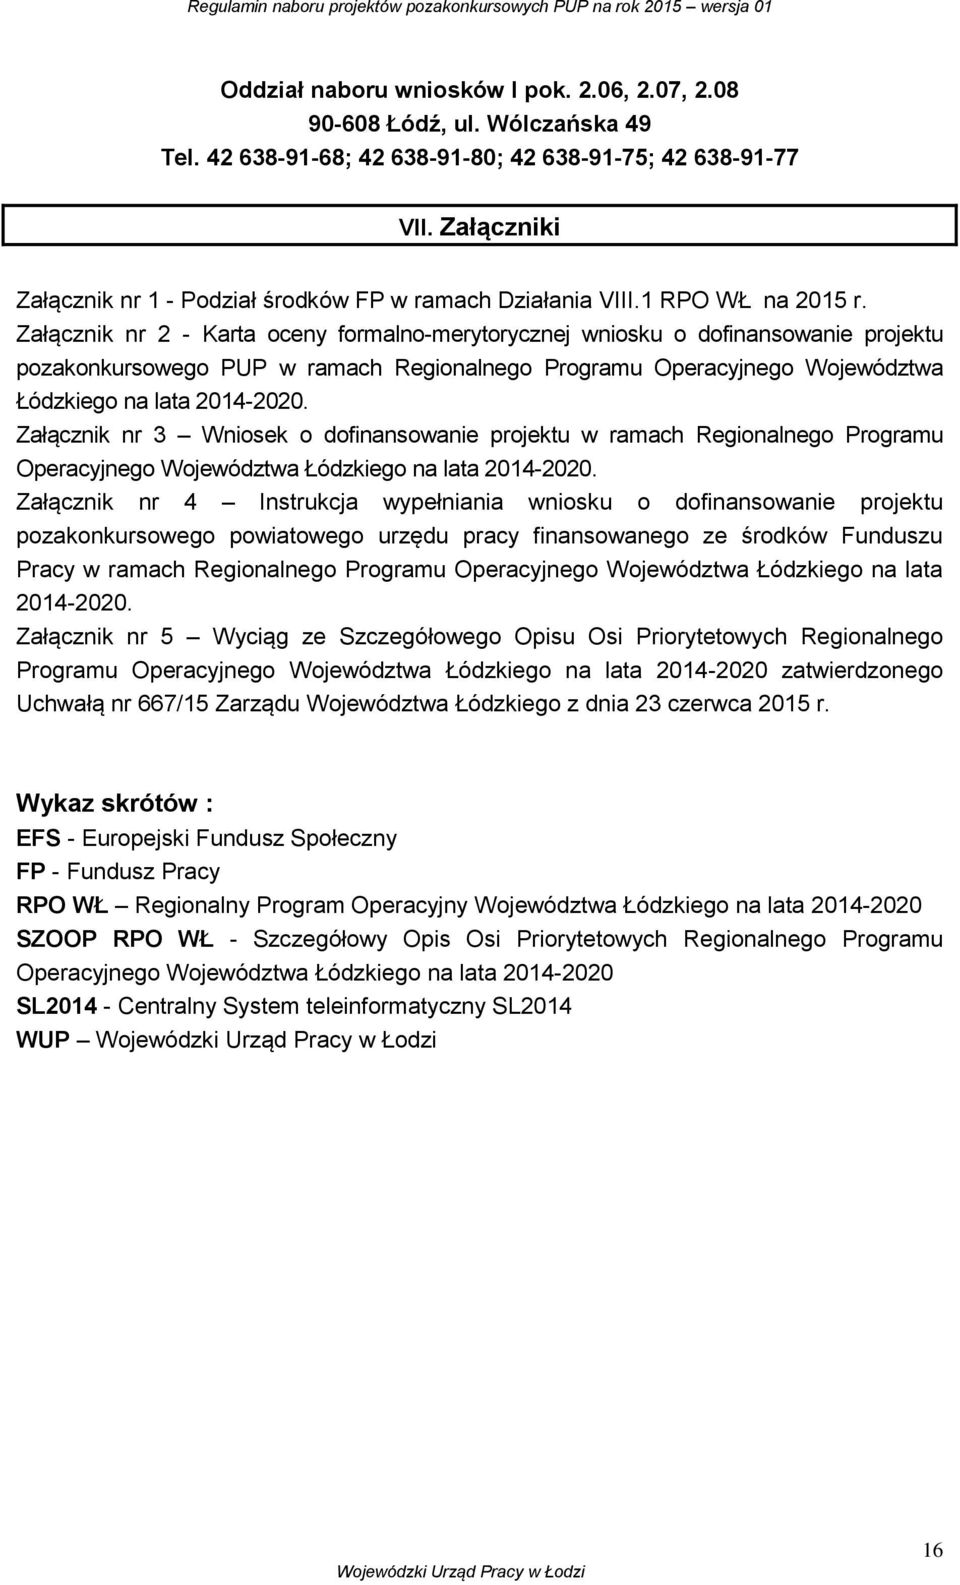 Załącznik nr 2 - Karta oceny formalno-merytorycznej wniosku o dofinansowanie projektu pozakonkursowego PUP w ramach Regionalnego Programu Operacyjnego Województwa Łódzkiego na lata 2014-2020.